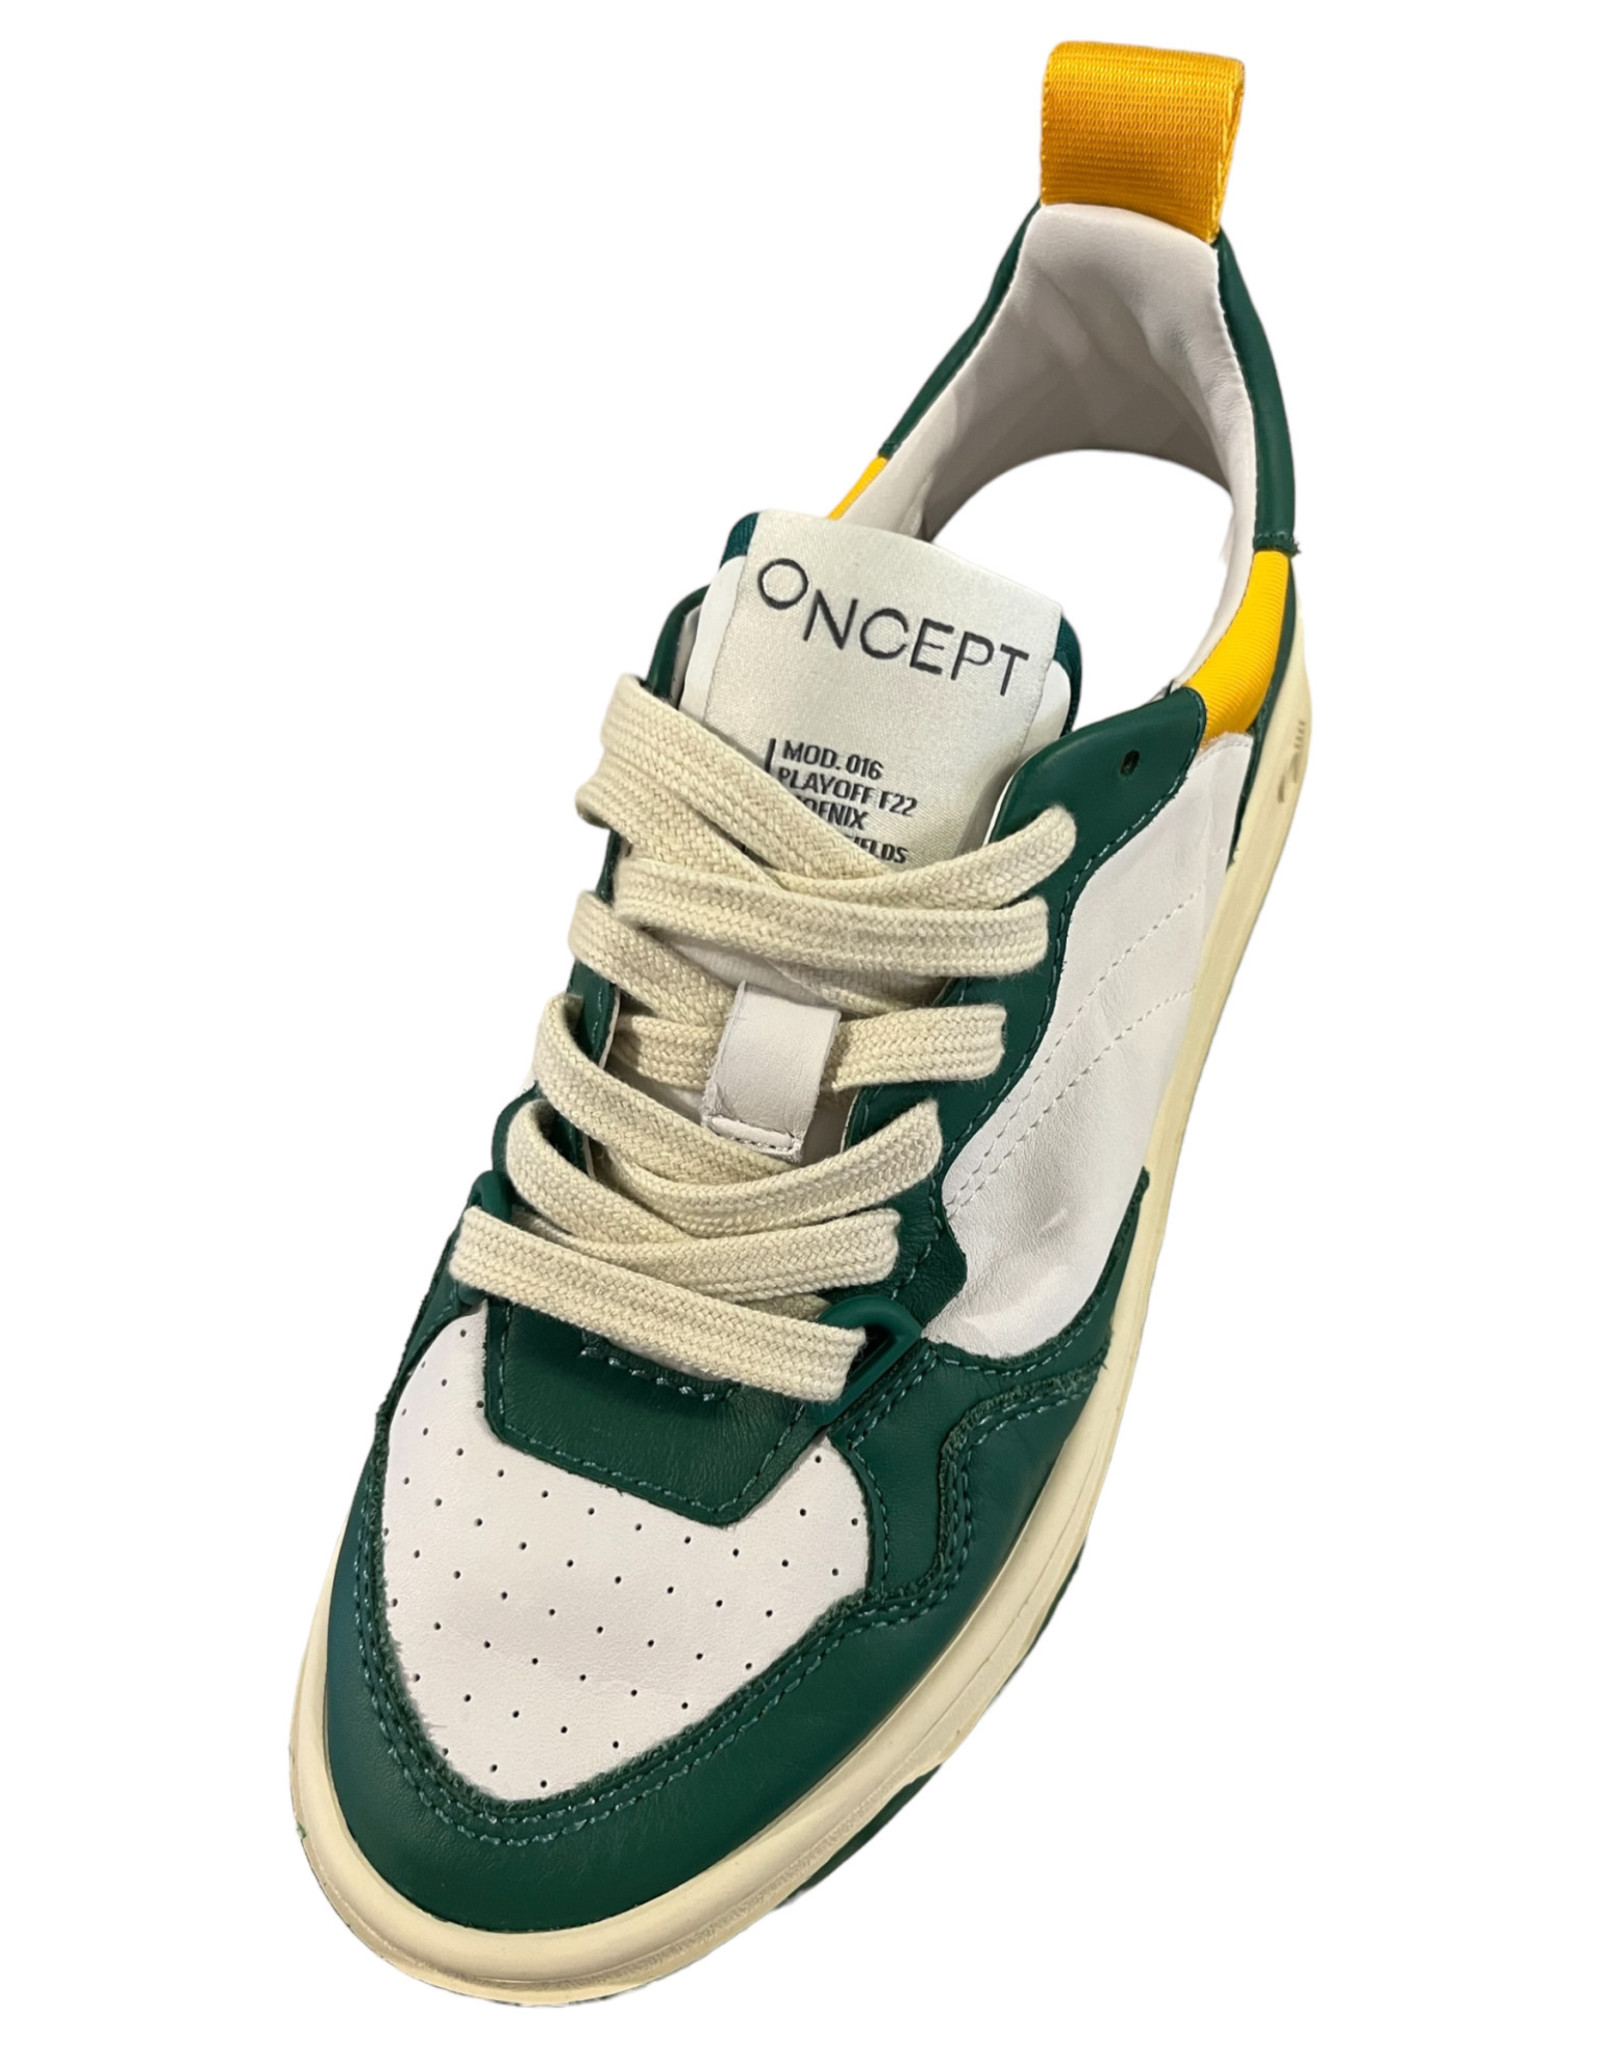 ONCEPT Oncept phoenix calf leather shoe